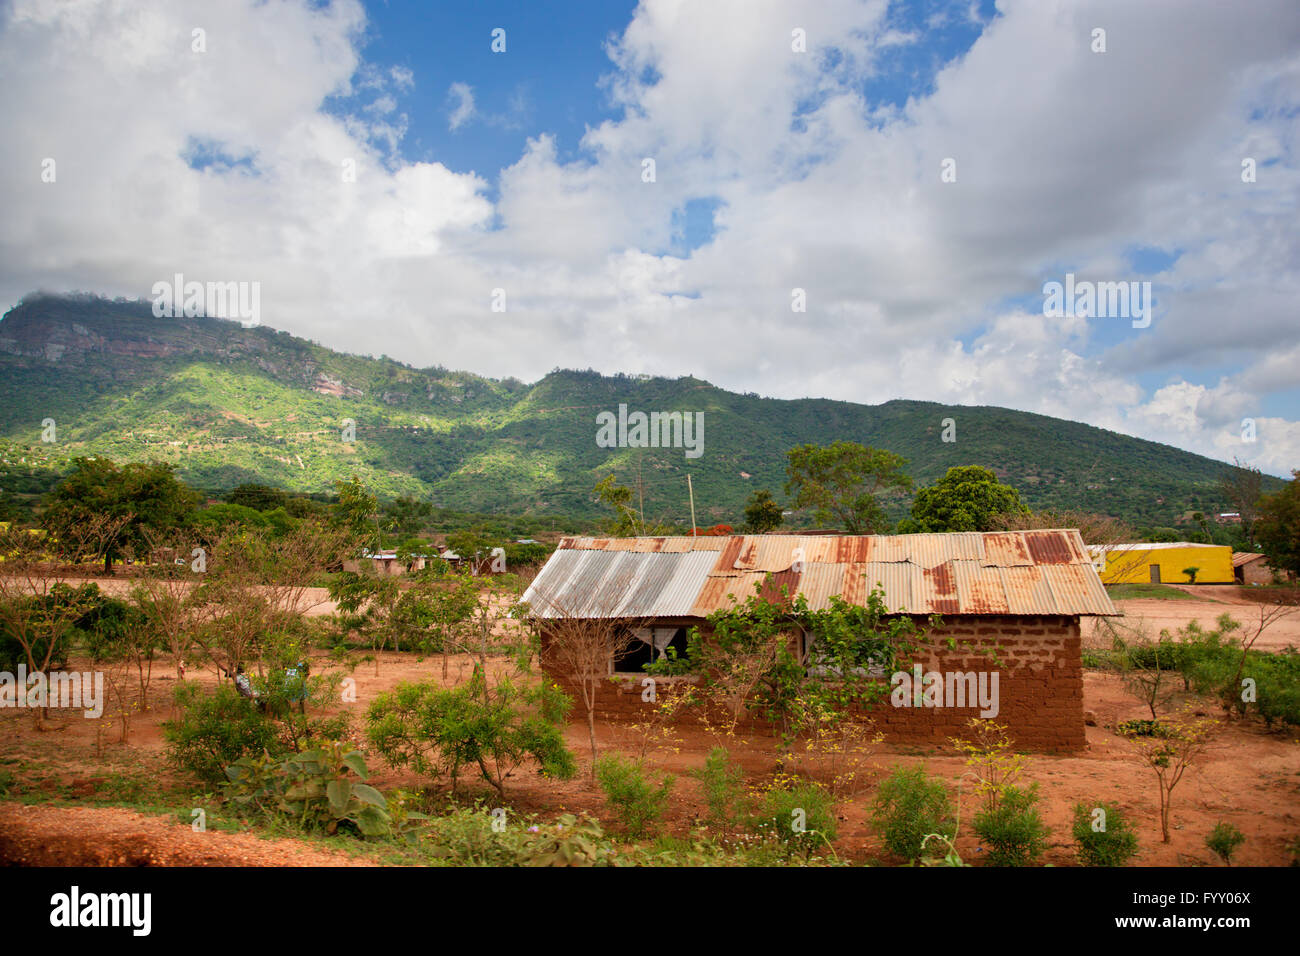 Southern Kenya poverty landscape Stock Photo